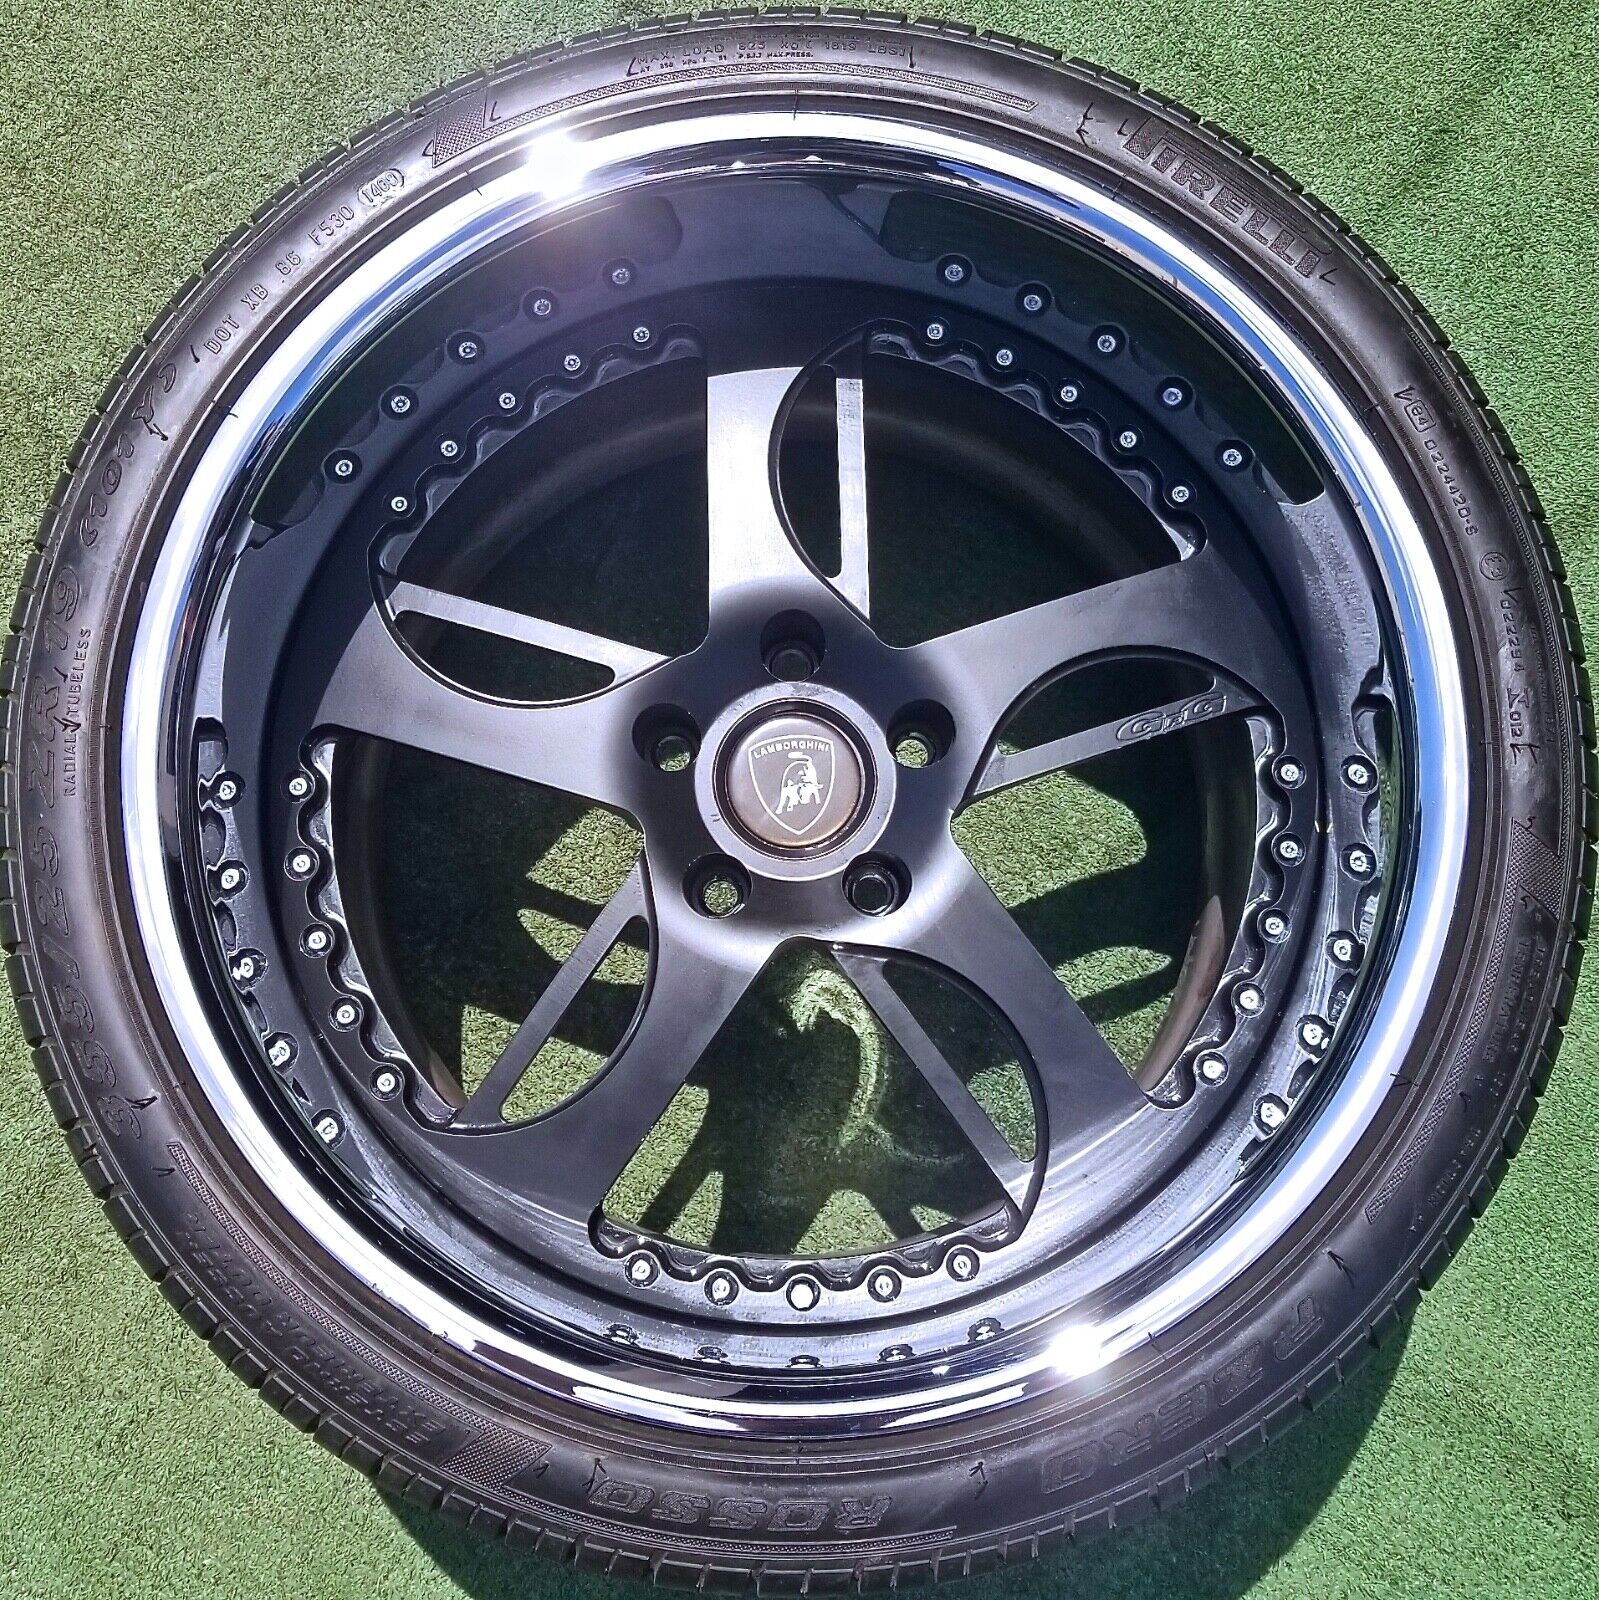 Set 3-Piece Wheels Tires fit OEM Factory Lamborghini Diablo Murcielago LP640 GFG